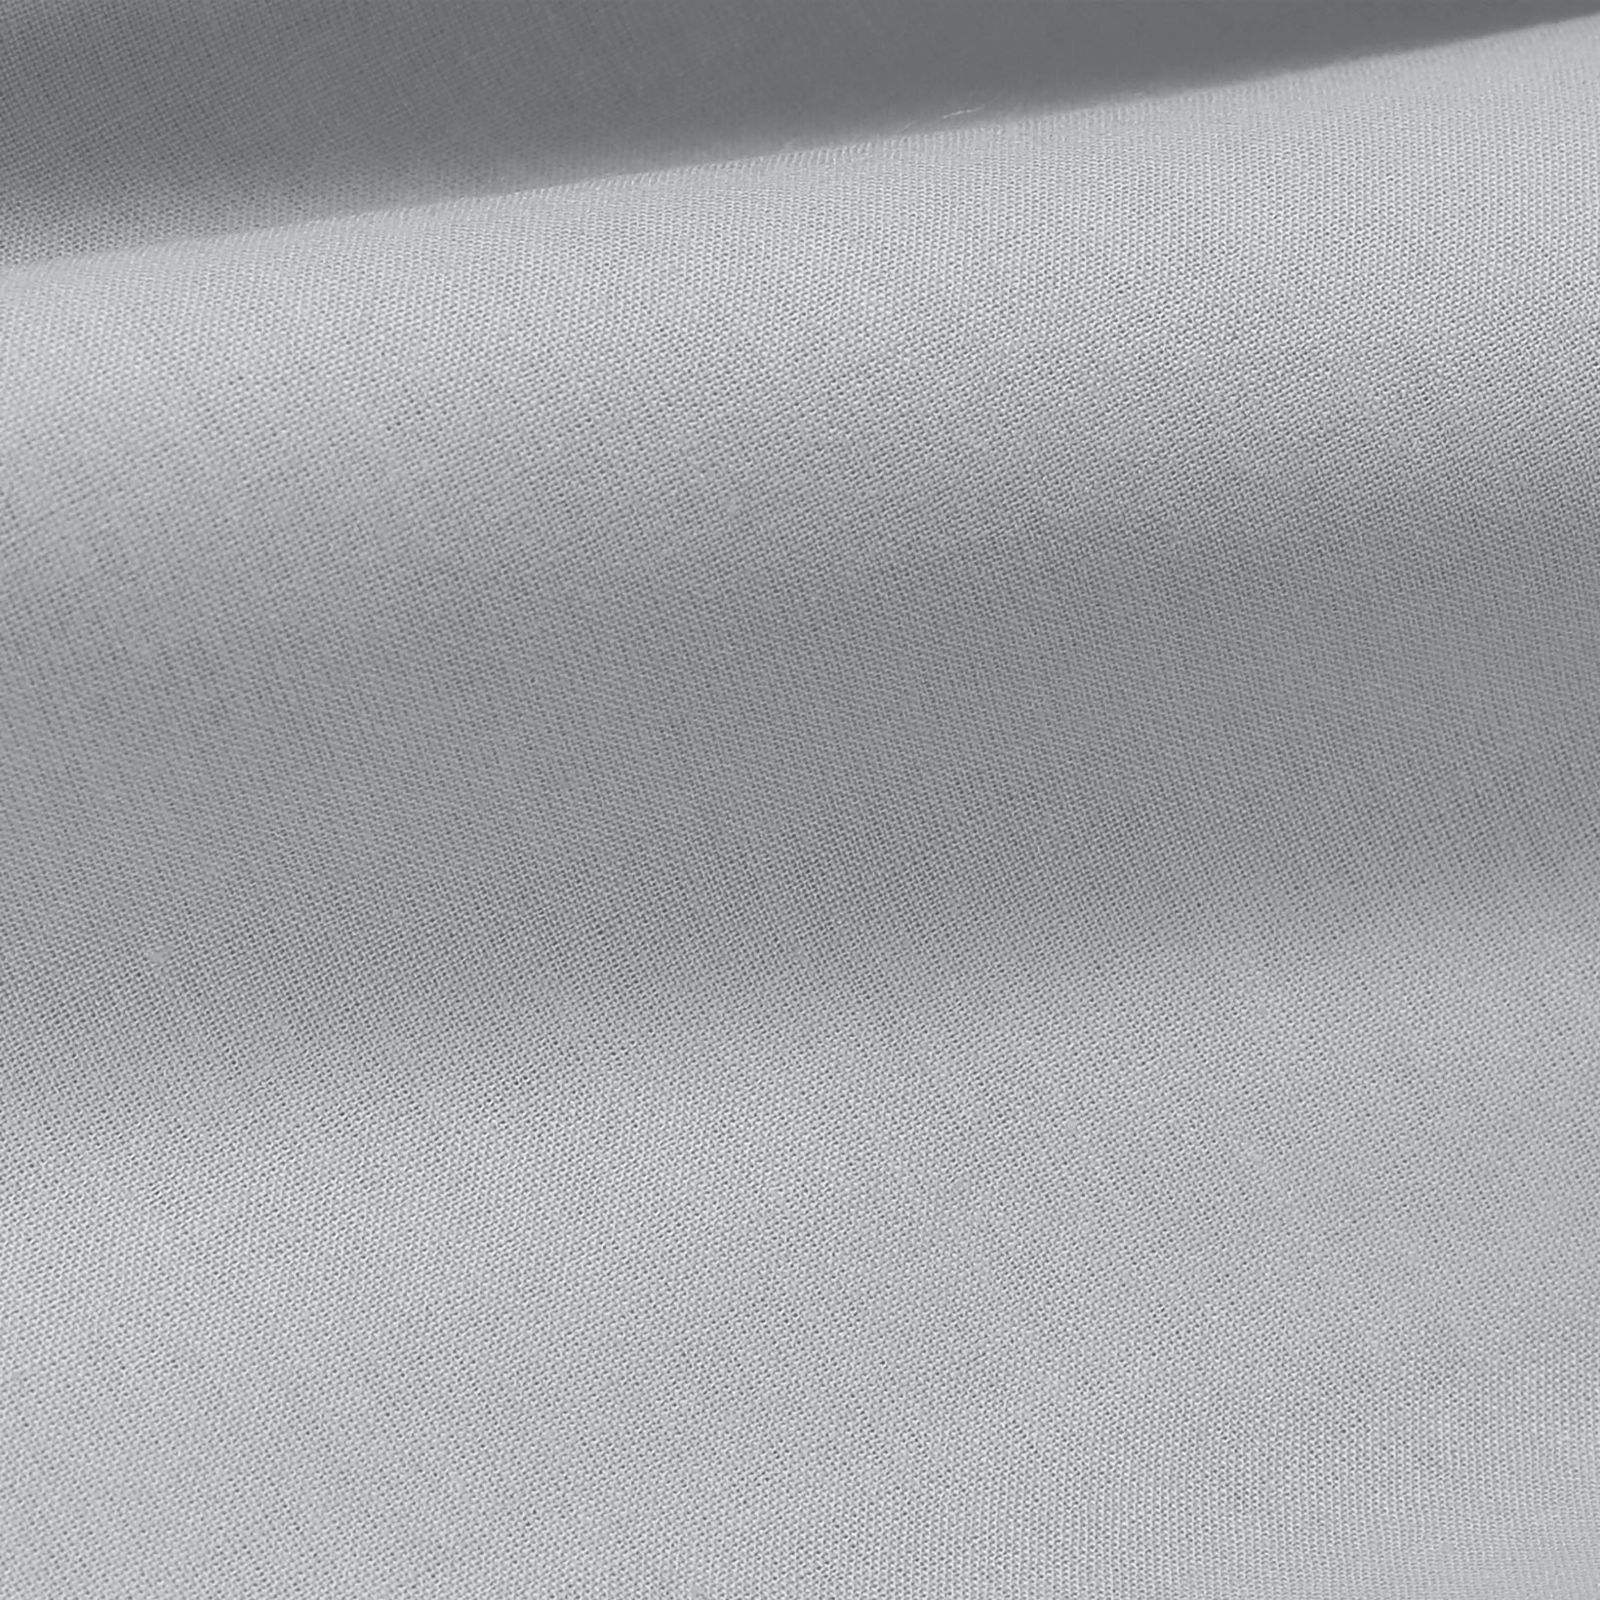 Płótno bawełniane jednokolorowe Suzy - szare